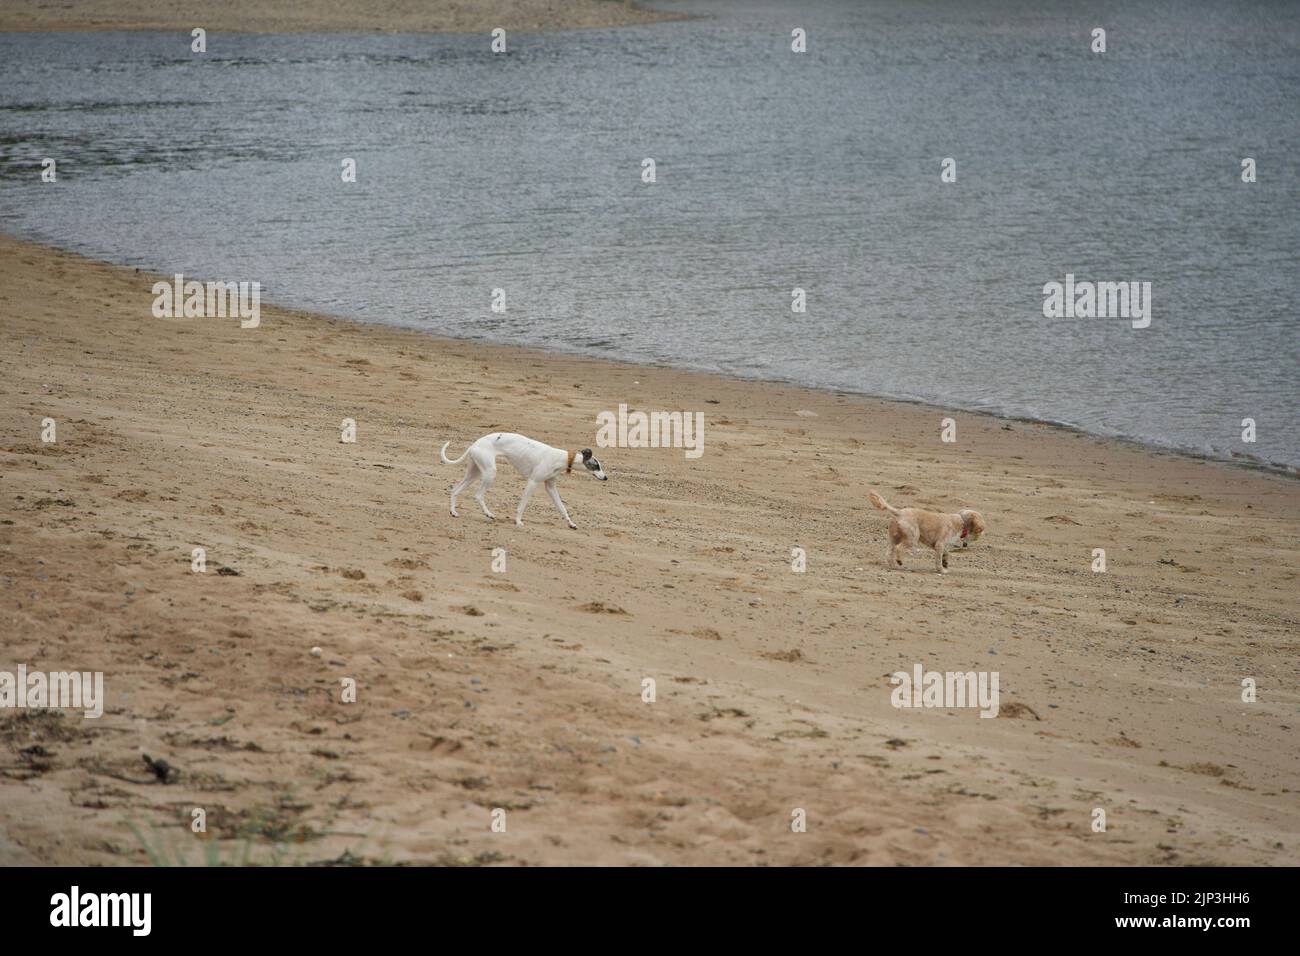 Deux chiens adorables se chassent les uns les autres sur une plage de sable, près de l'océan ondulé Banque D'Images